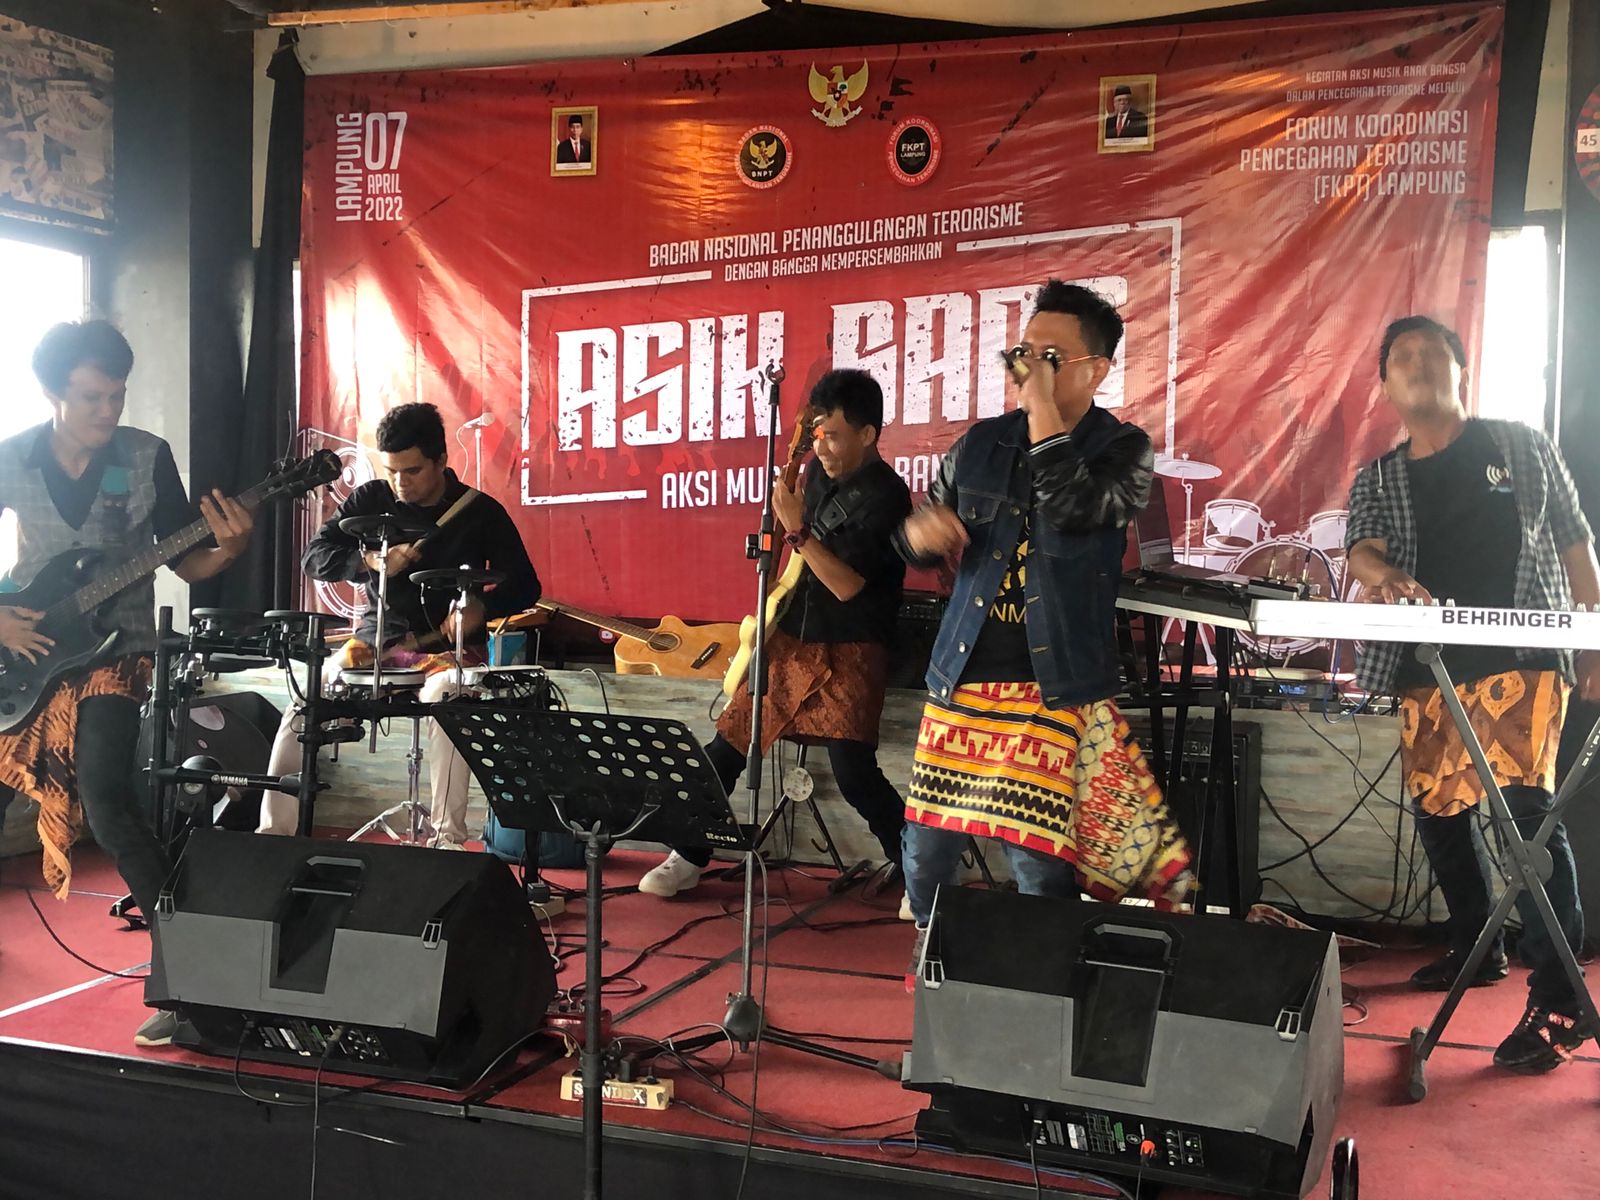 Penampilan peserta Asik Bang, Festival Musik BNPT di Pringsewu Lampung, Kamis (7/4/2022).